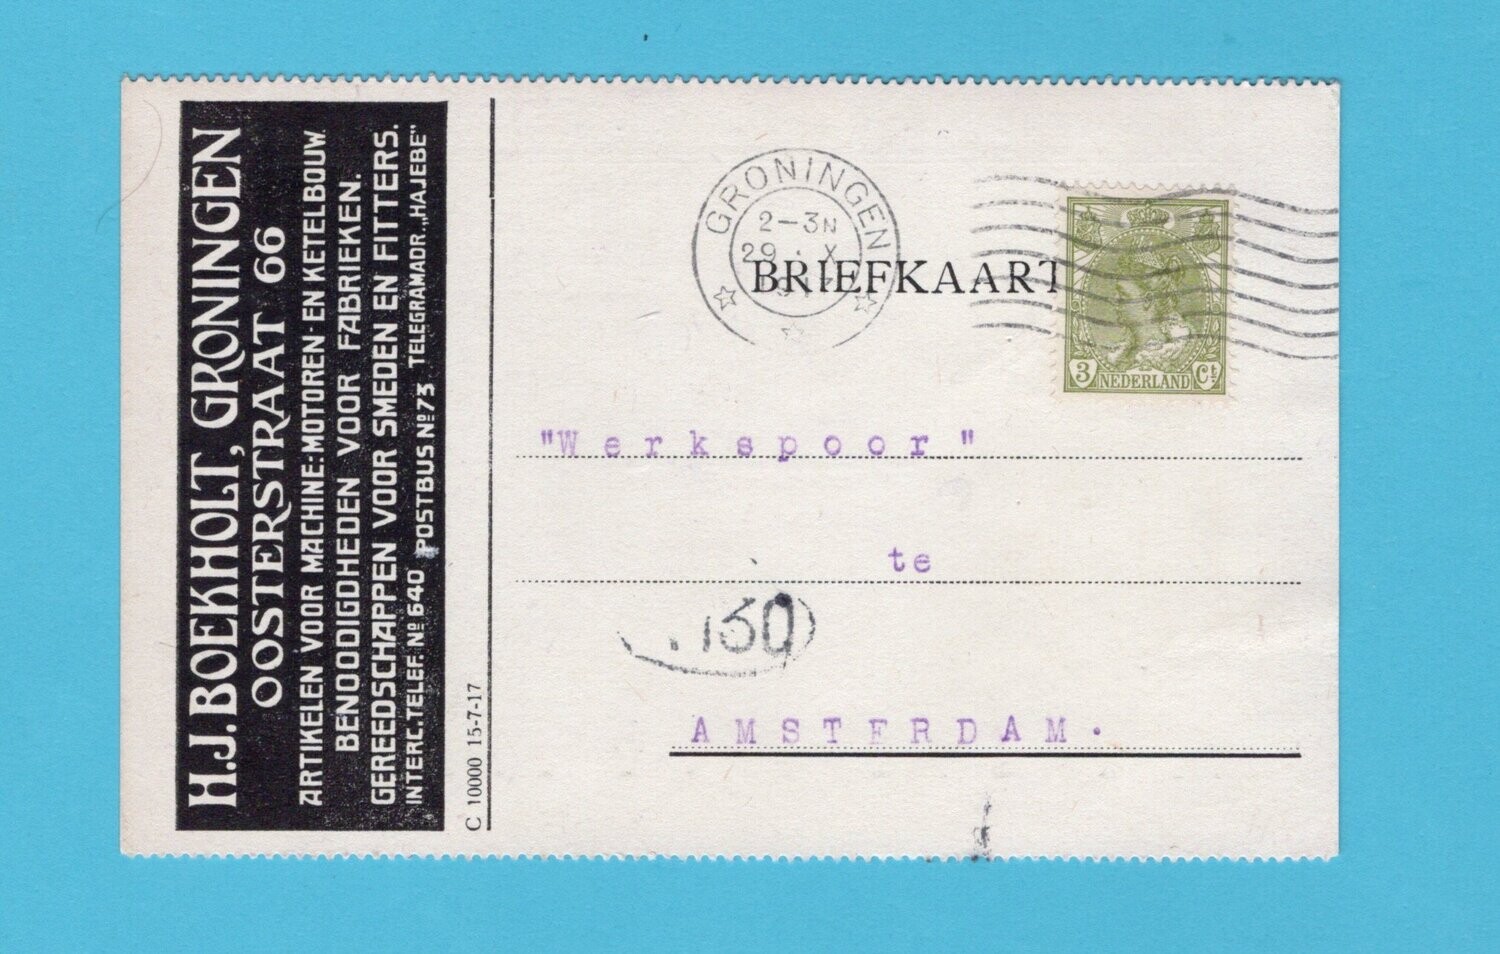 NEDERLAND briefkaart Boekholt gereedschap 1917 Groningen